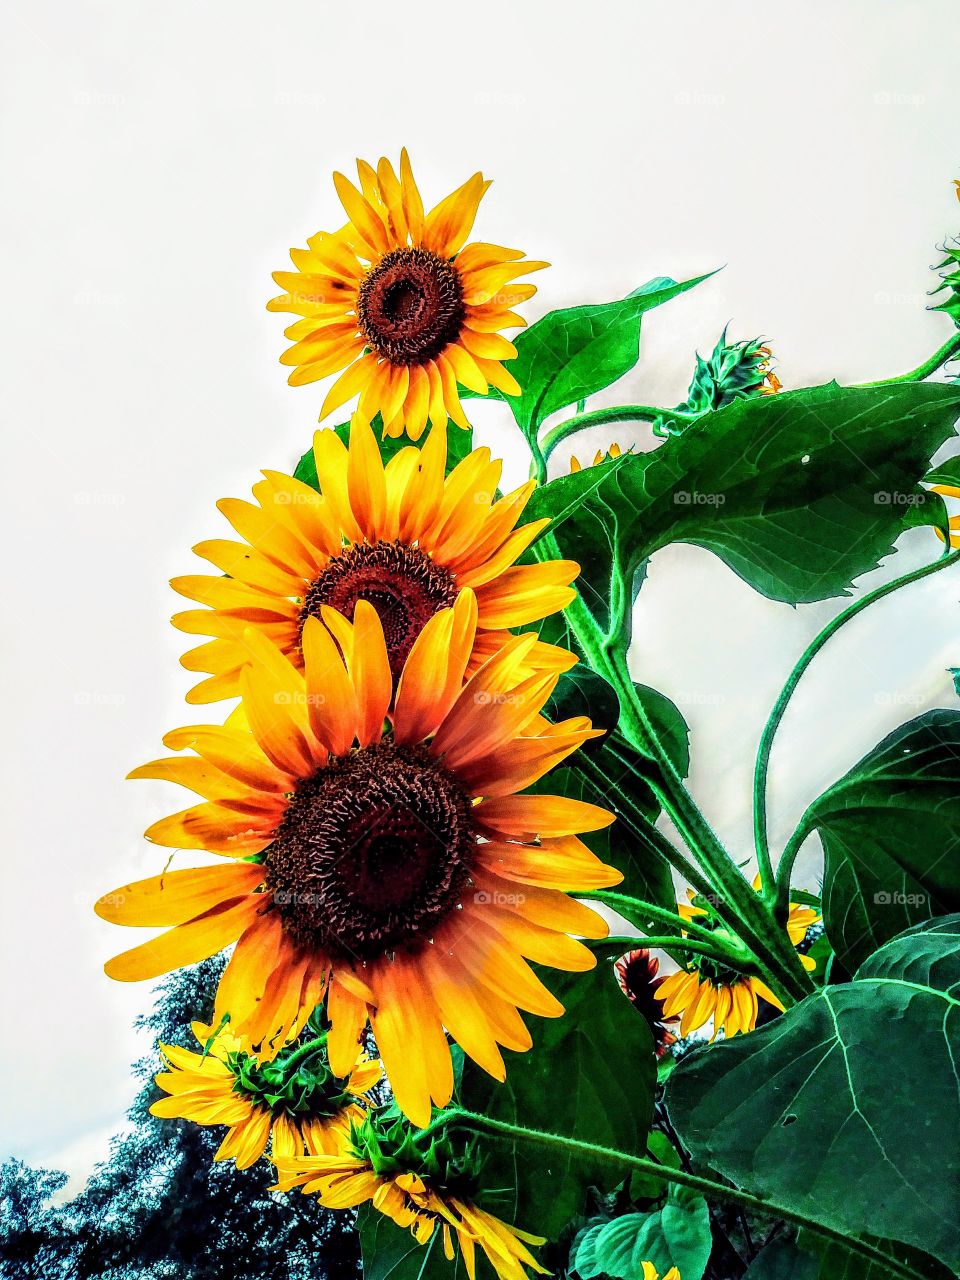 Sunflowers!!!